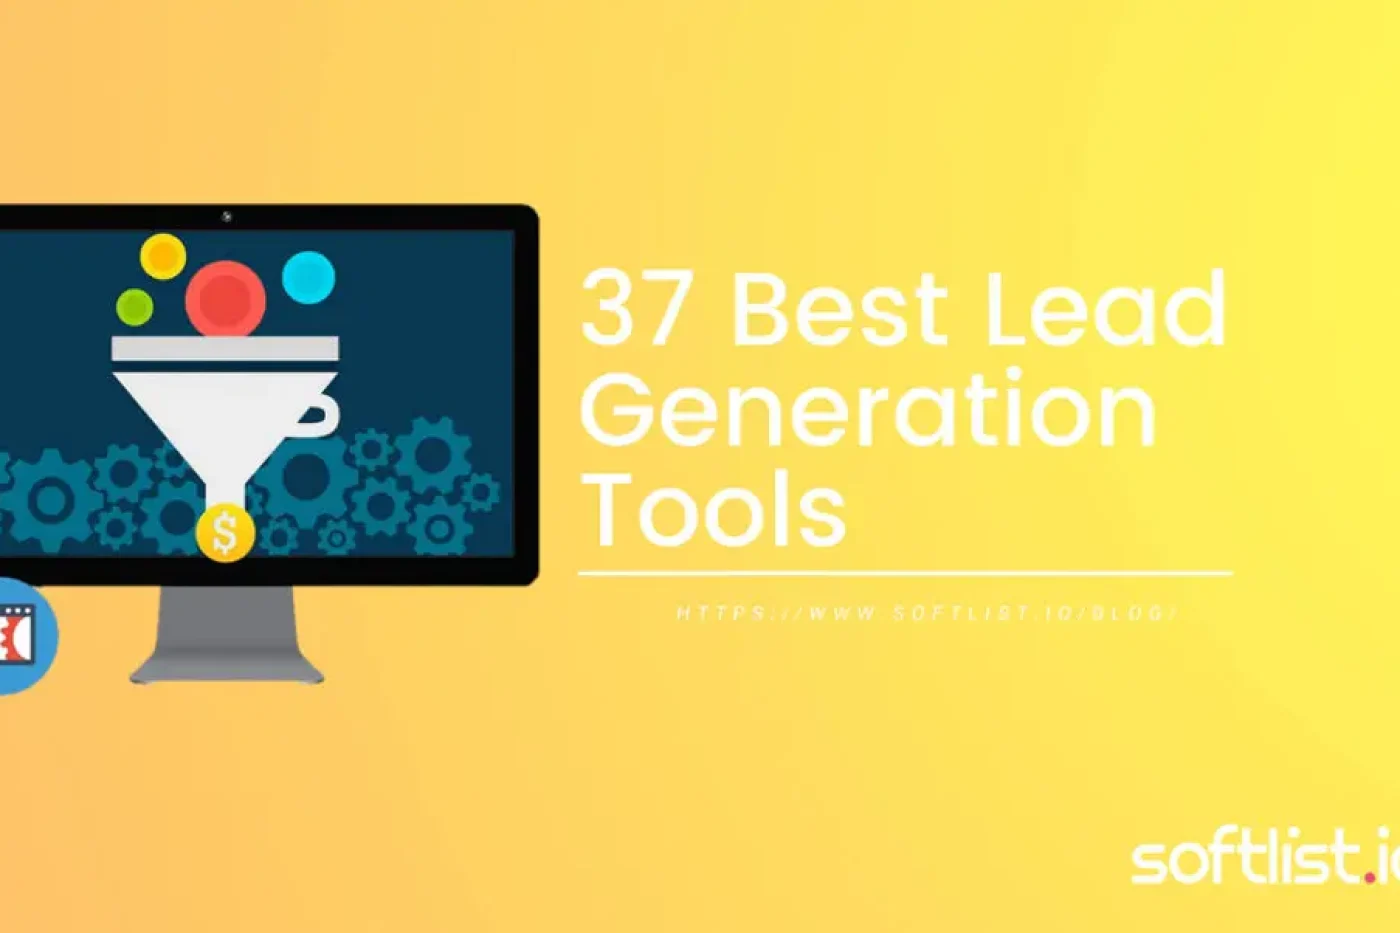 37 Proven Lead Generation Tools